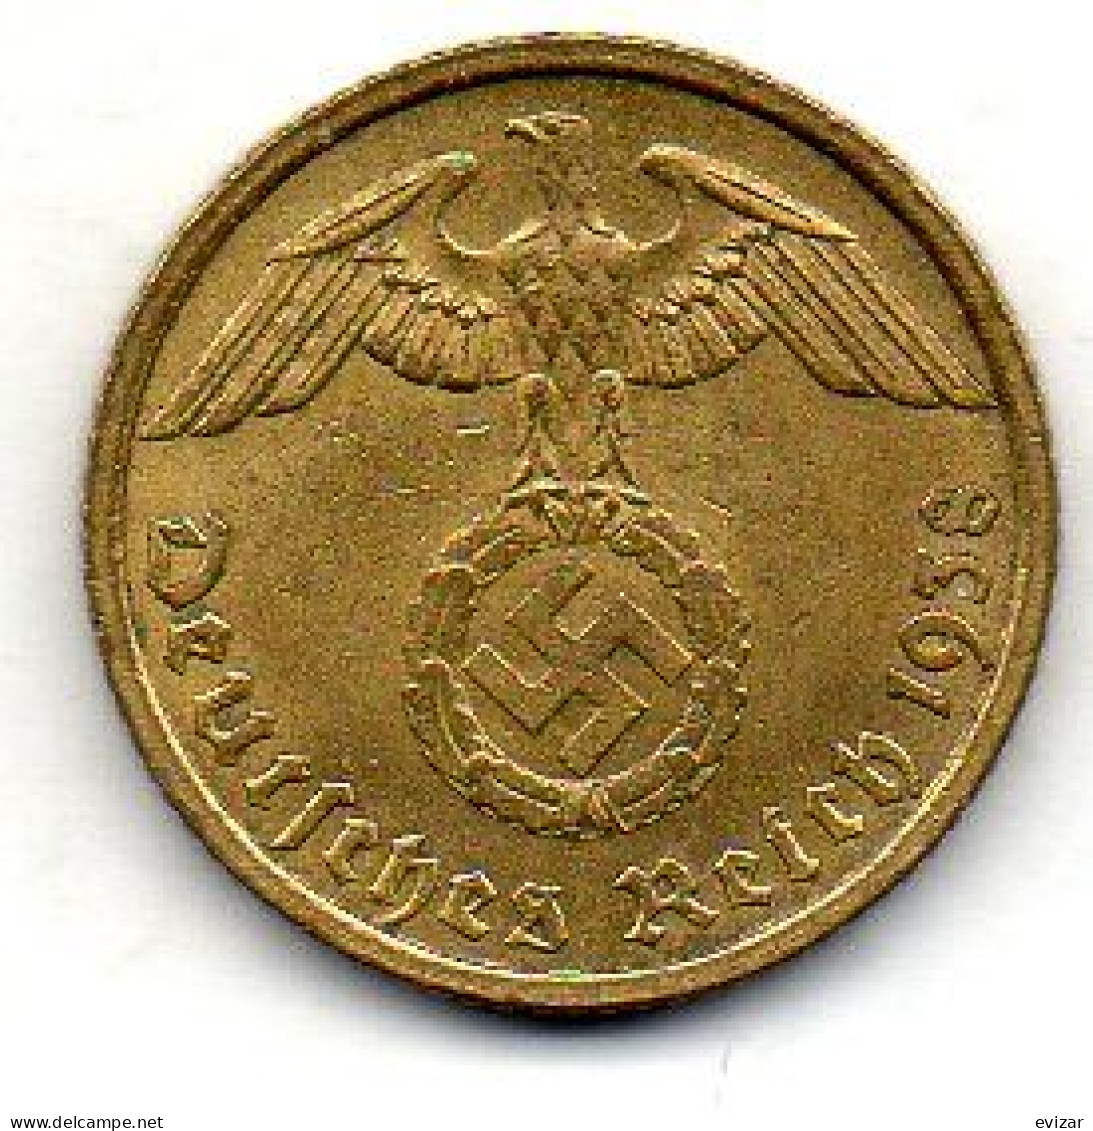 GERMANY - THIRD REICH, 10 Reichs Pfennig, Aluminum-Bronze, Year 1938-G, KM # 92 - 10 Reichspfennig